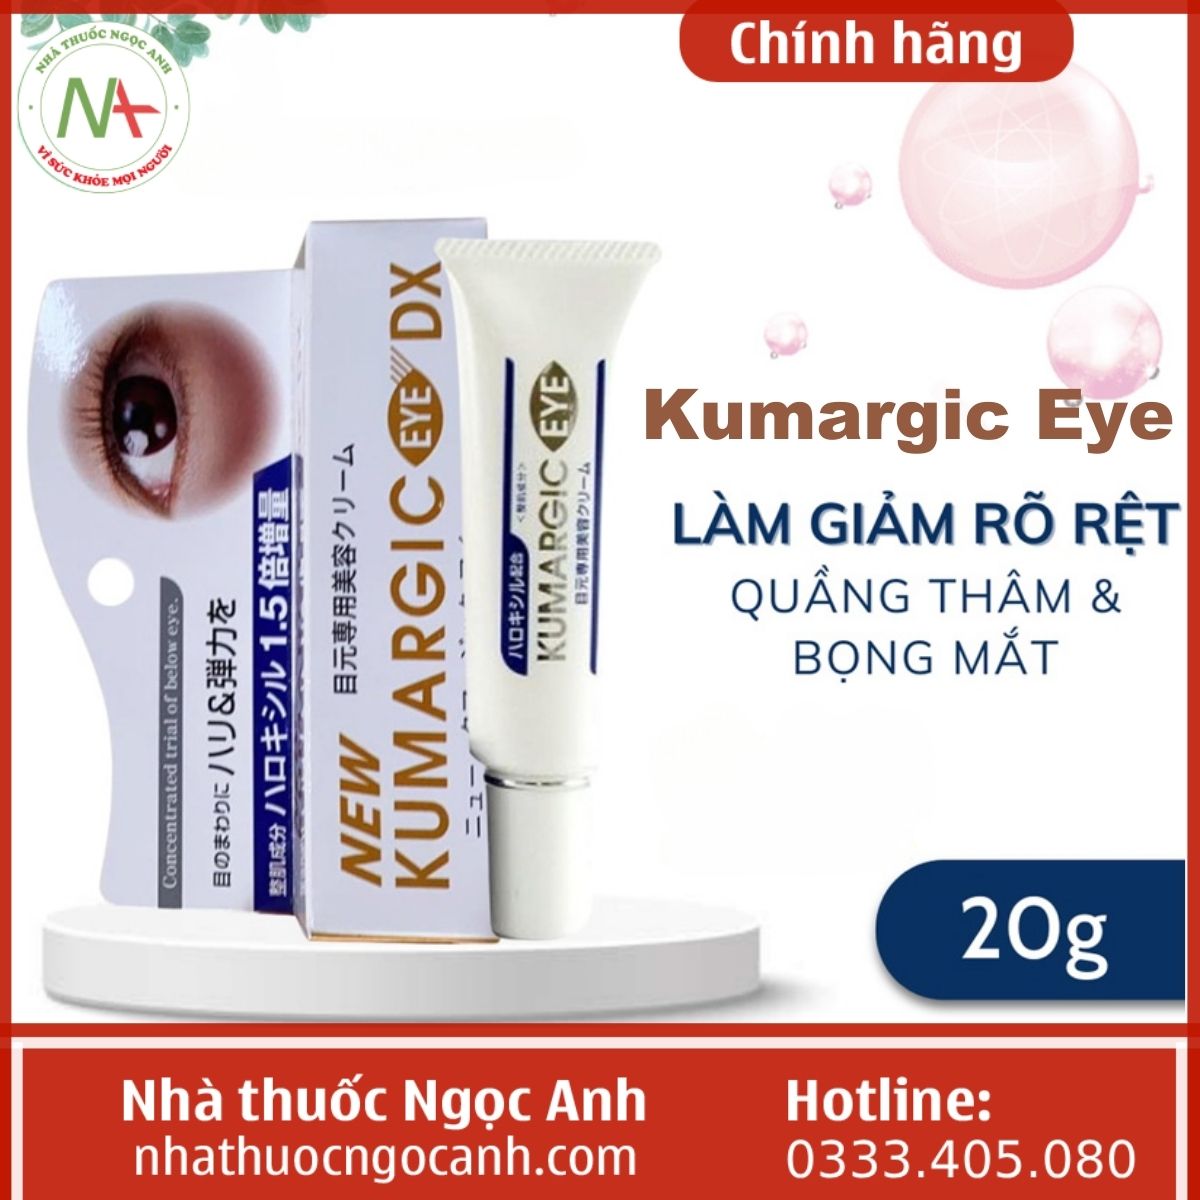 Kumargic Eye dưỡng ẩm, trị thâm quầng mắt